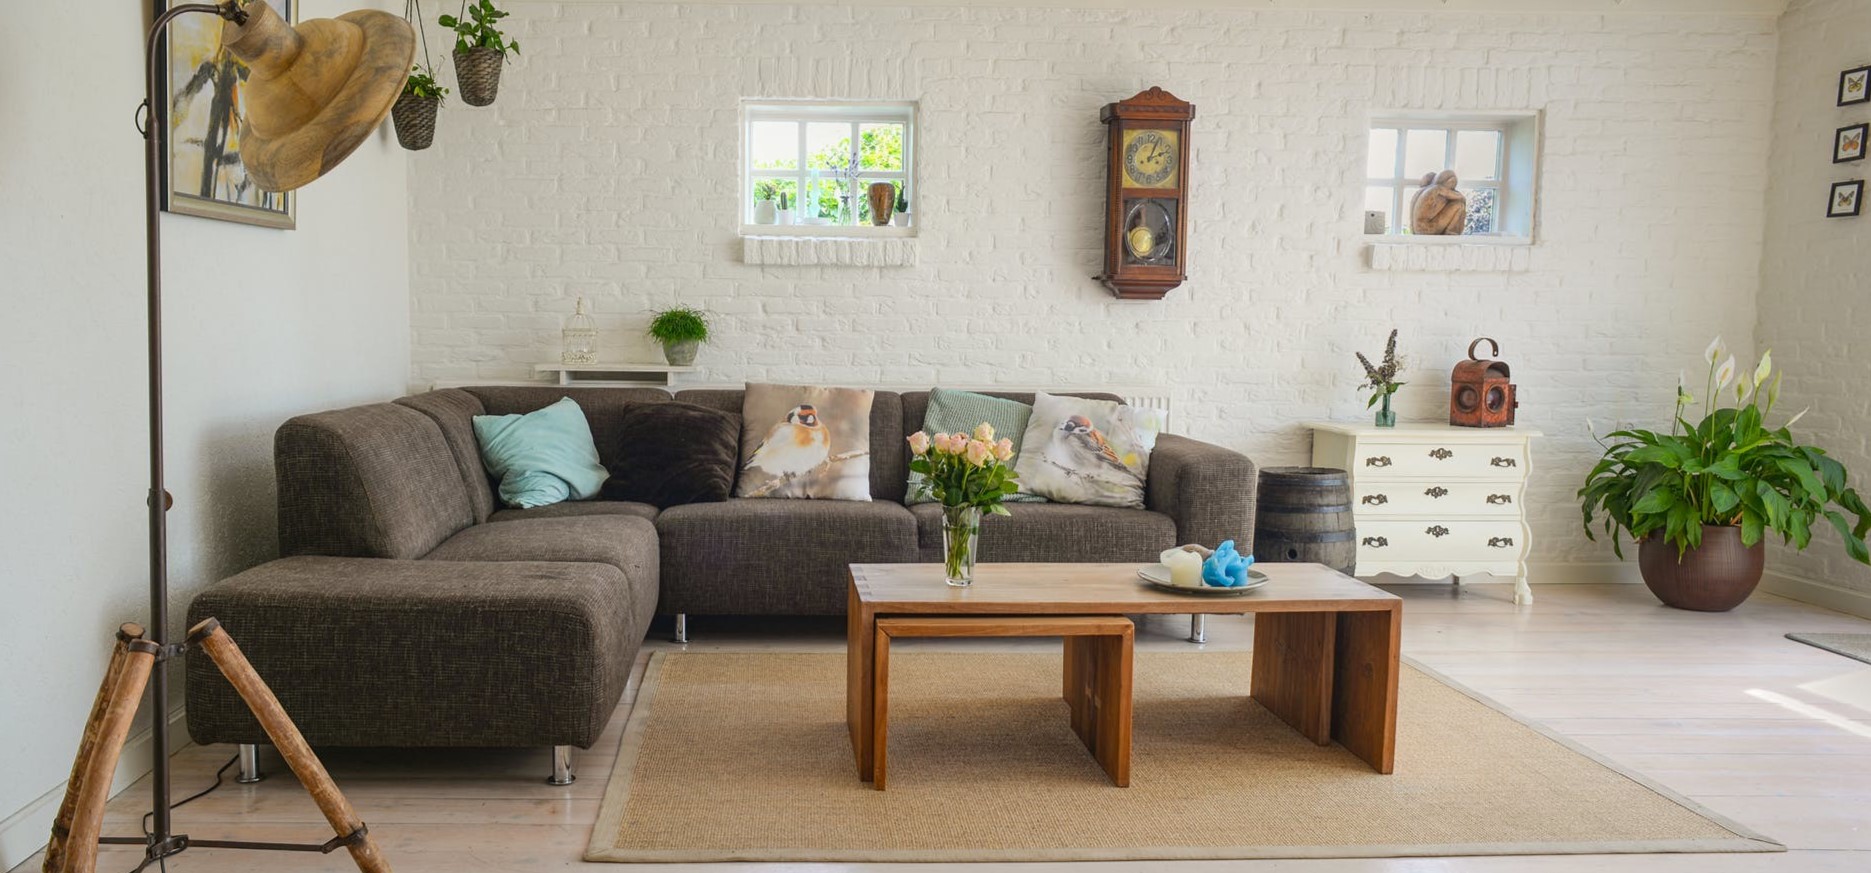 Коричневый диван отлично сочетается с белой кирпичной кладкой в интерьере